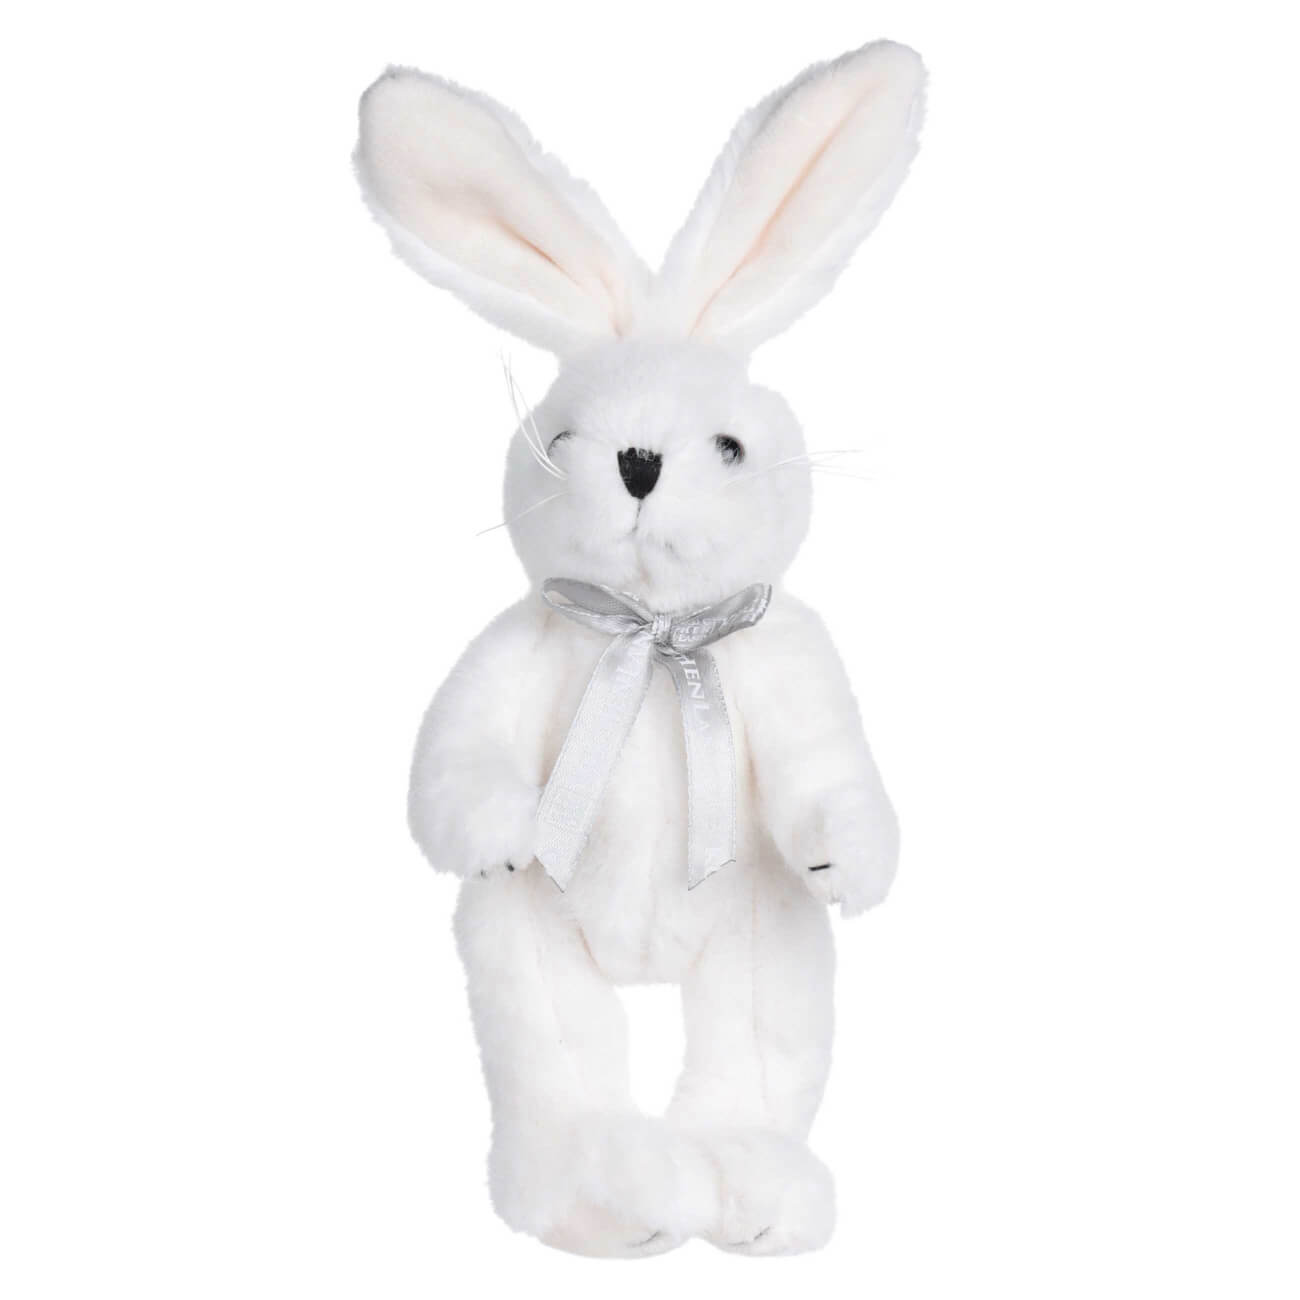 Игрушка, 20 см, мягкая, с подвижными лапами, полиэстер, белая, Кролик, Rabbit toy мягкая игрушка girl you are amazing мишка 12 см